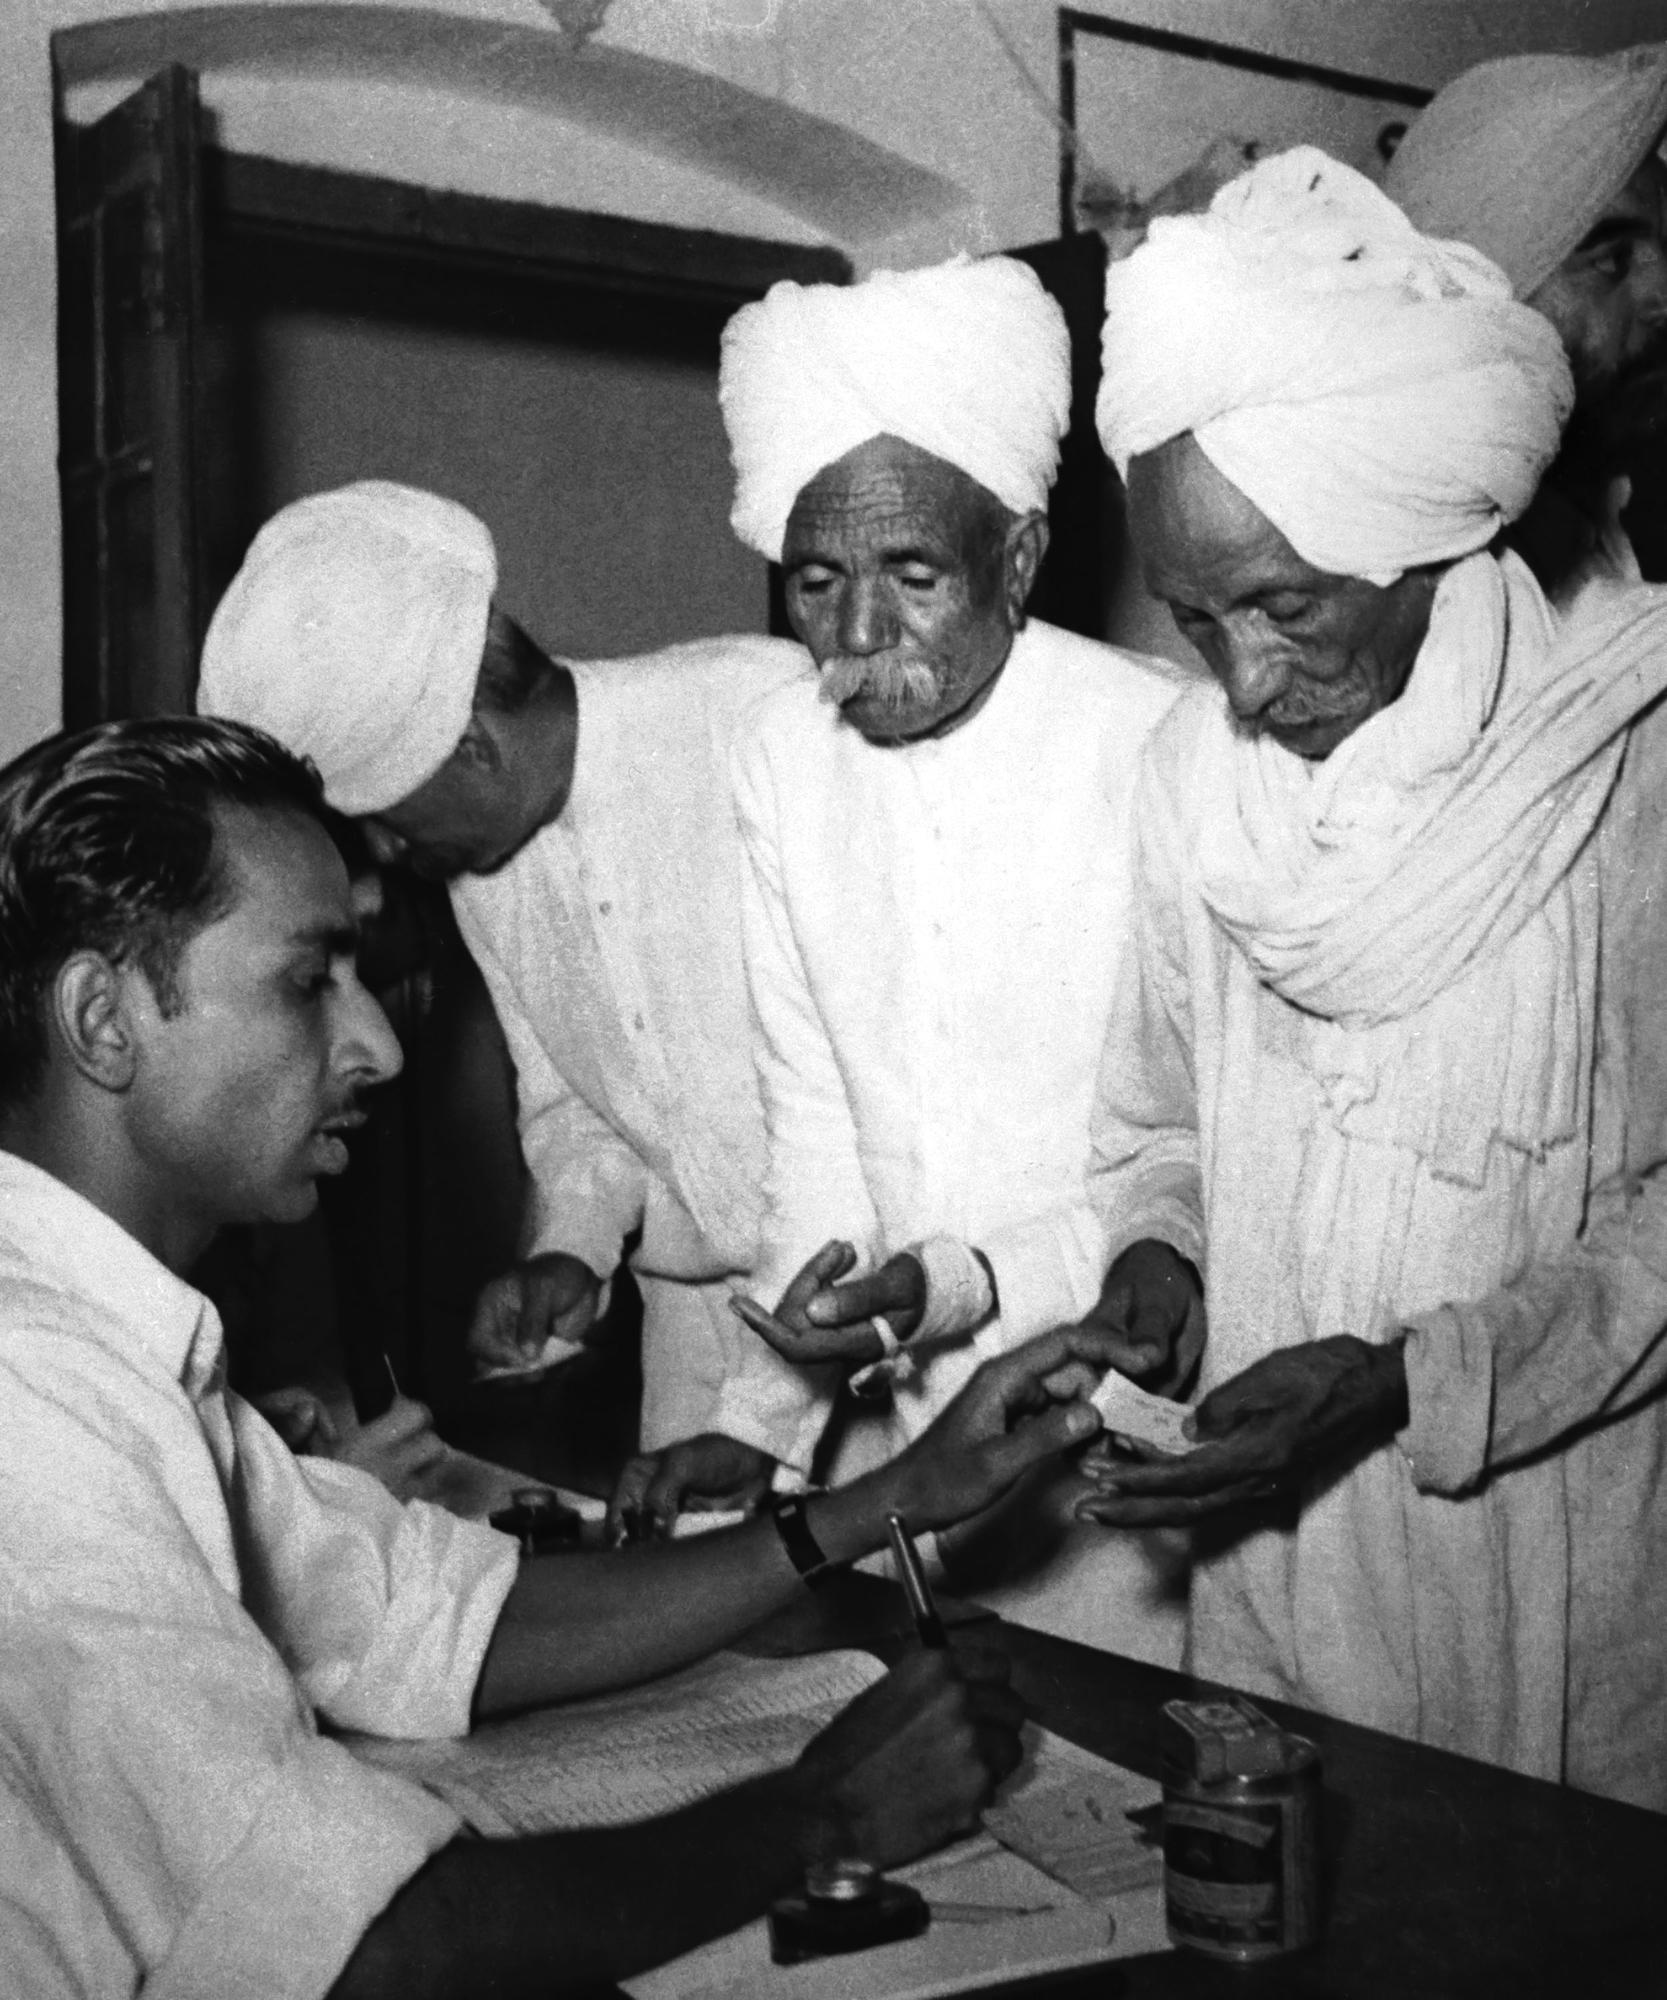 ARQUIVO - Eleitores recebem cédulas de funcionários das assembleias de voto para a primeira eleição geral da Índia em uma vila rural do estado de Delhi na Índia por volta de 14 de dezembro de 1951. (AP Photo/File)